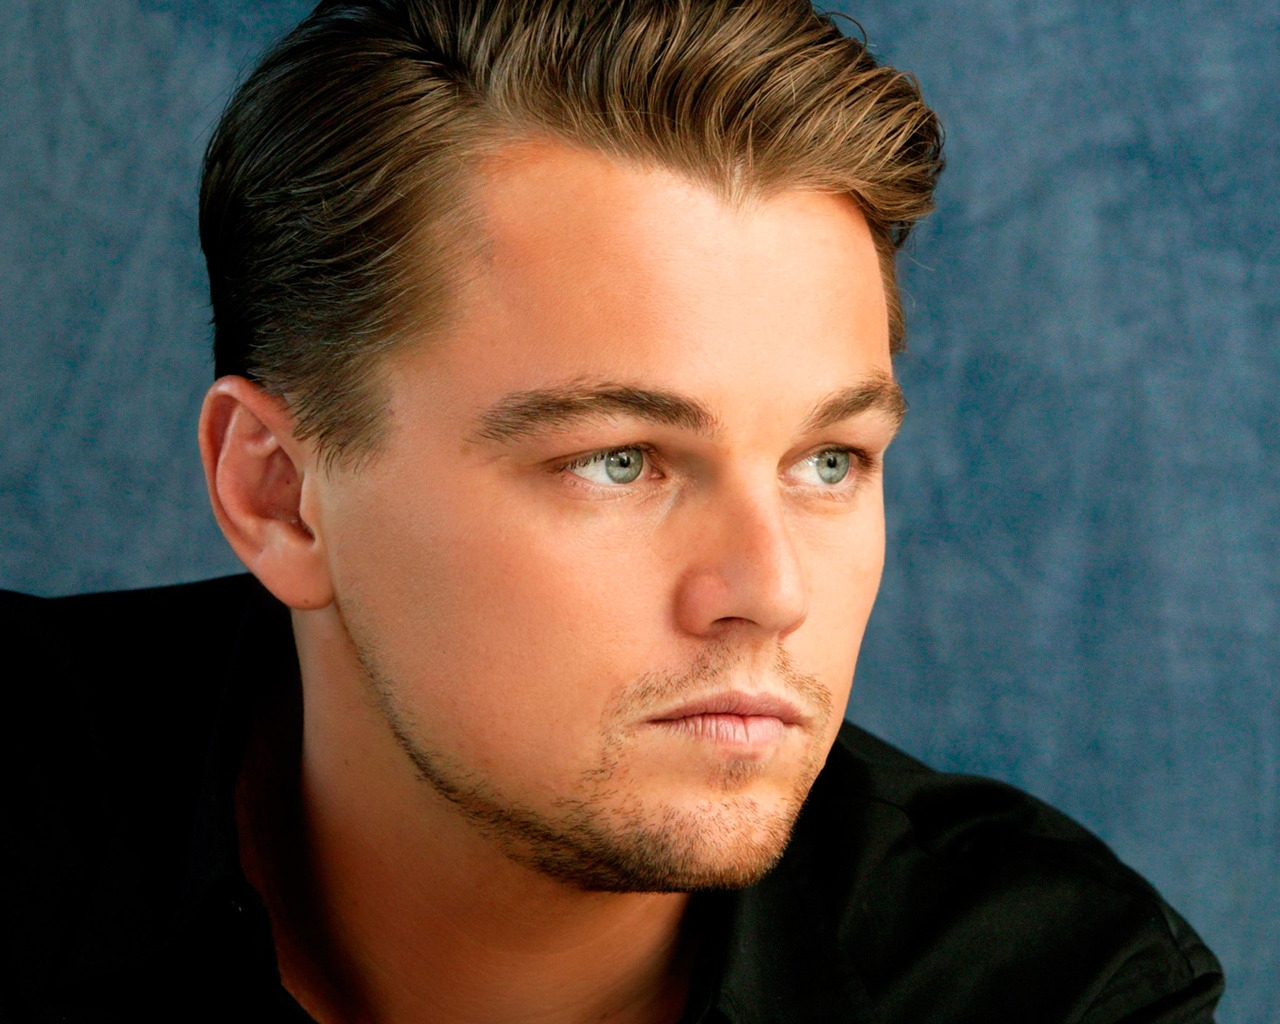 Beautiful Leonardo DiCaprio for 1280 x 1024 resolution